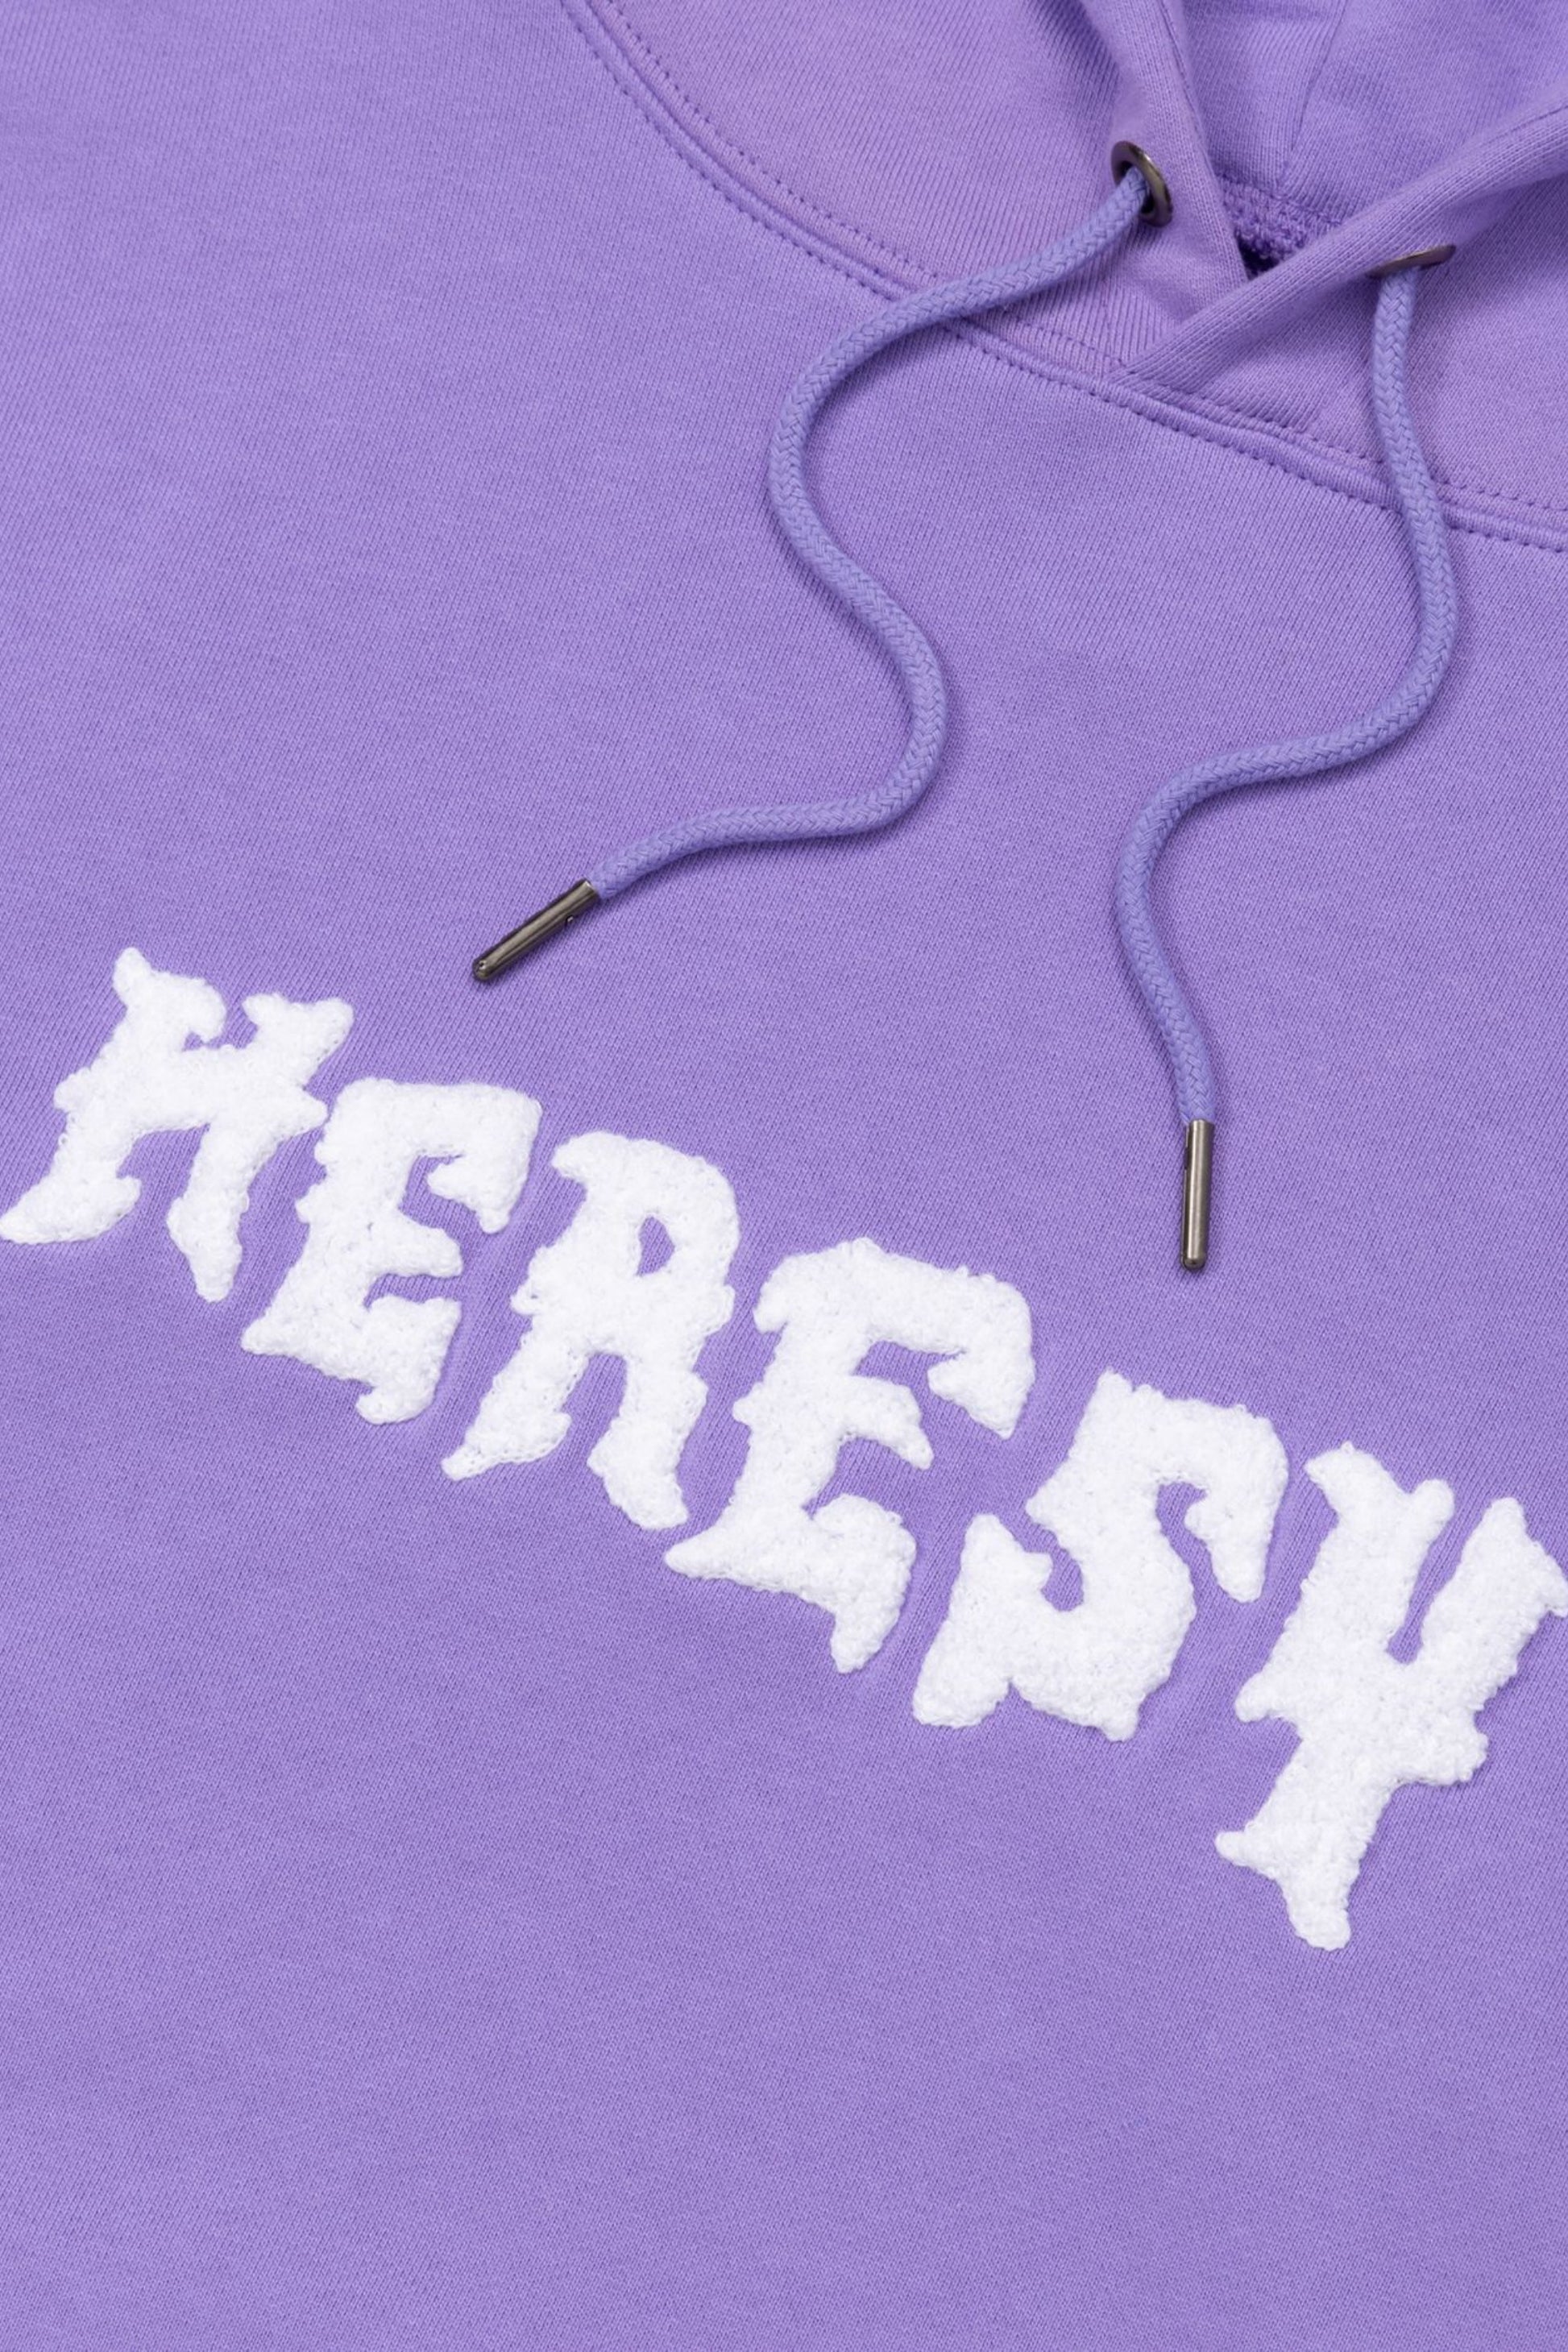 Heresy - Crypt Hood (Lavender)